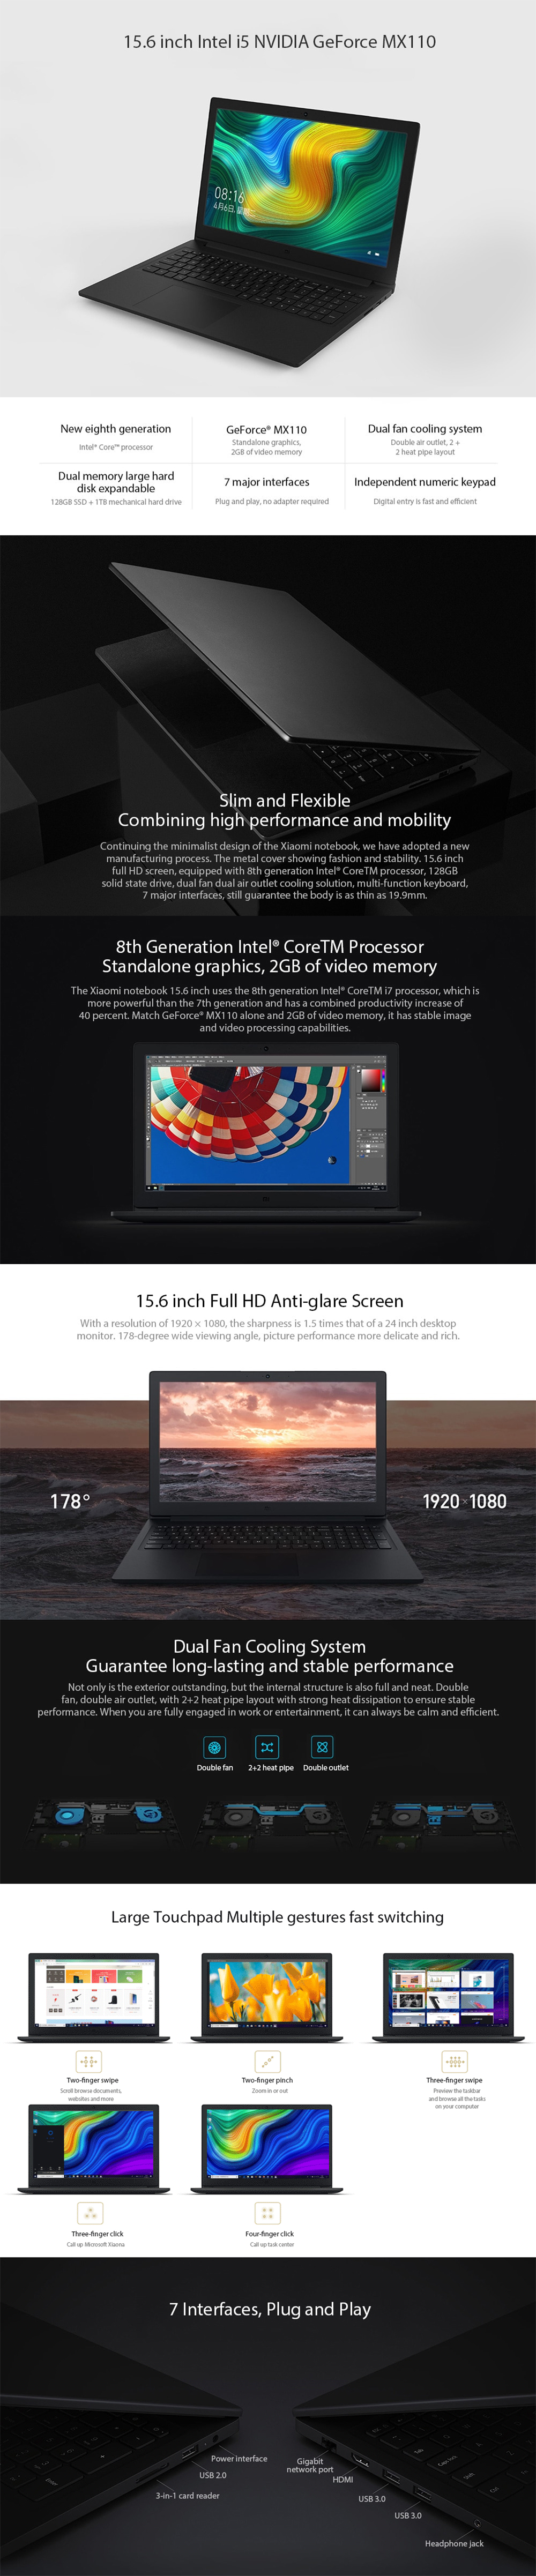 Xiaomi Mi Notebook Intel i5-8250U NVIDIA GeForce MX110 4GB DDR4 128GB SATA SSD 1TB HDD Laptop 